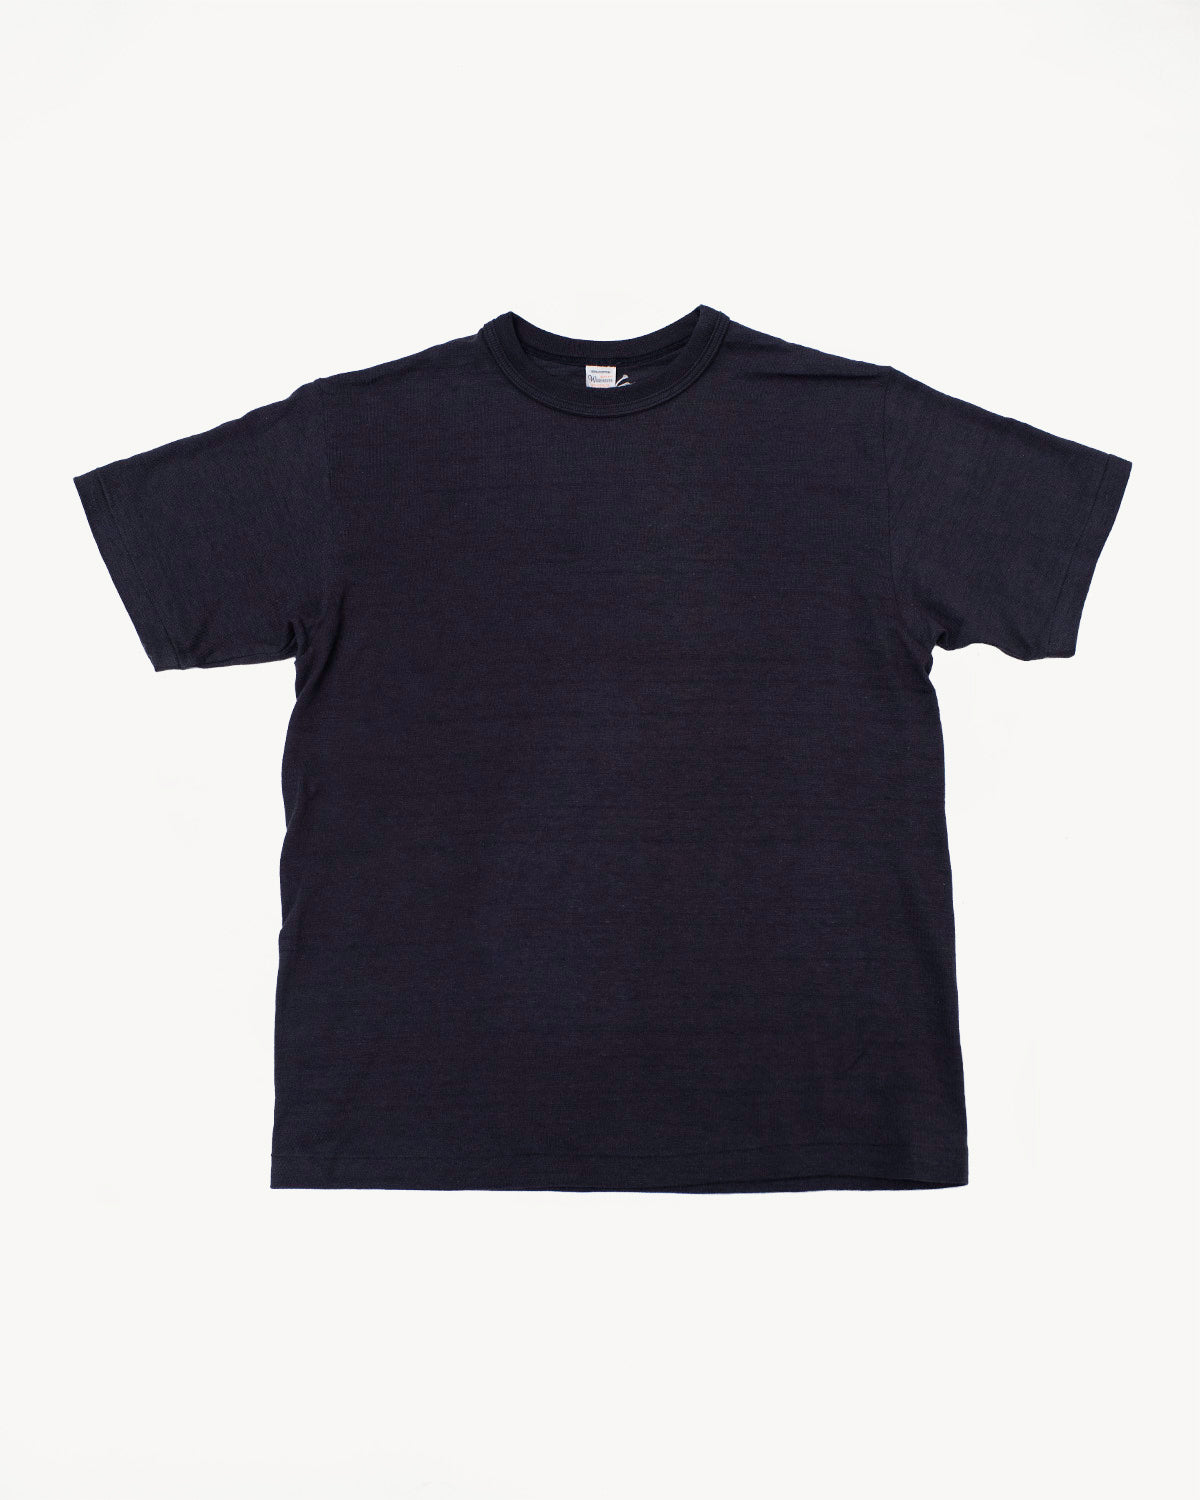 Lot 4601 - Slubby Cotton T-Shirt - Sumikuro